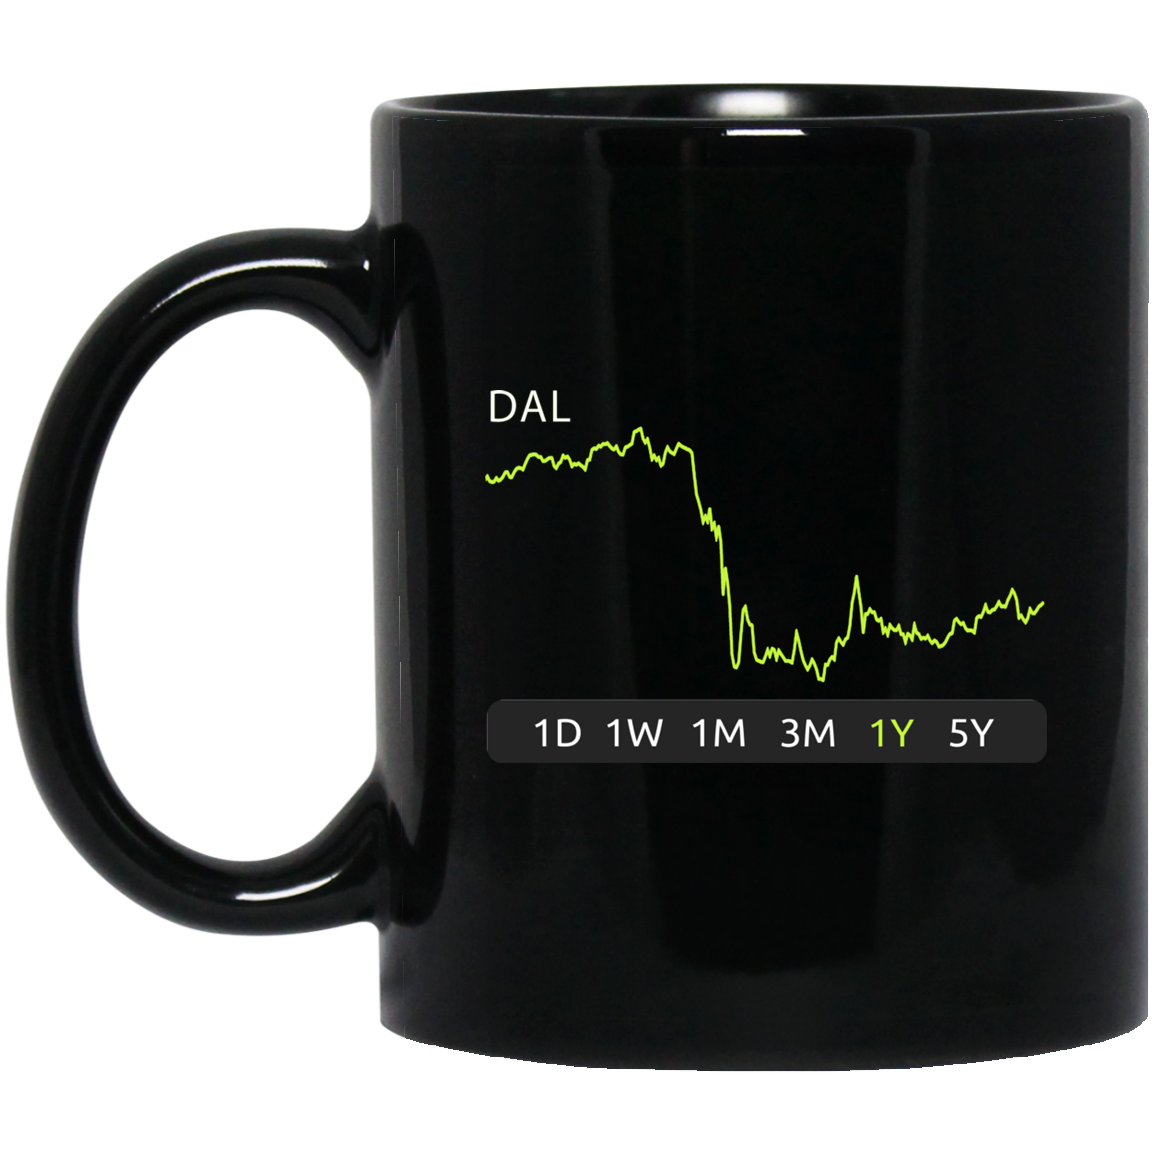 DAL Stock 1y Mug